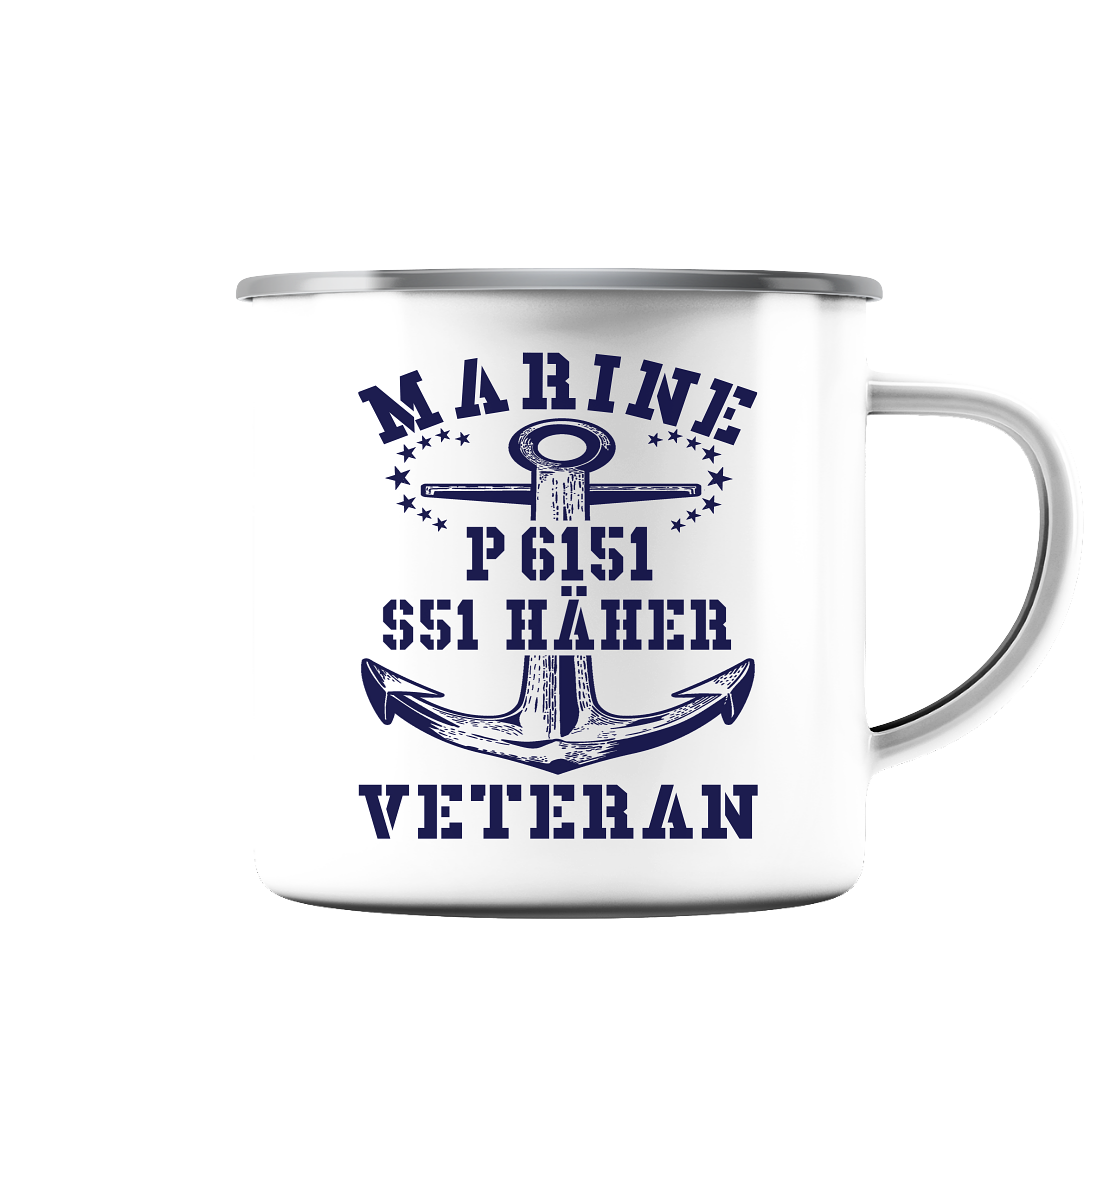 P6151 S51 HÄHER Marine Veteran - Emaille Tasse (Silber)